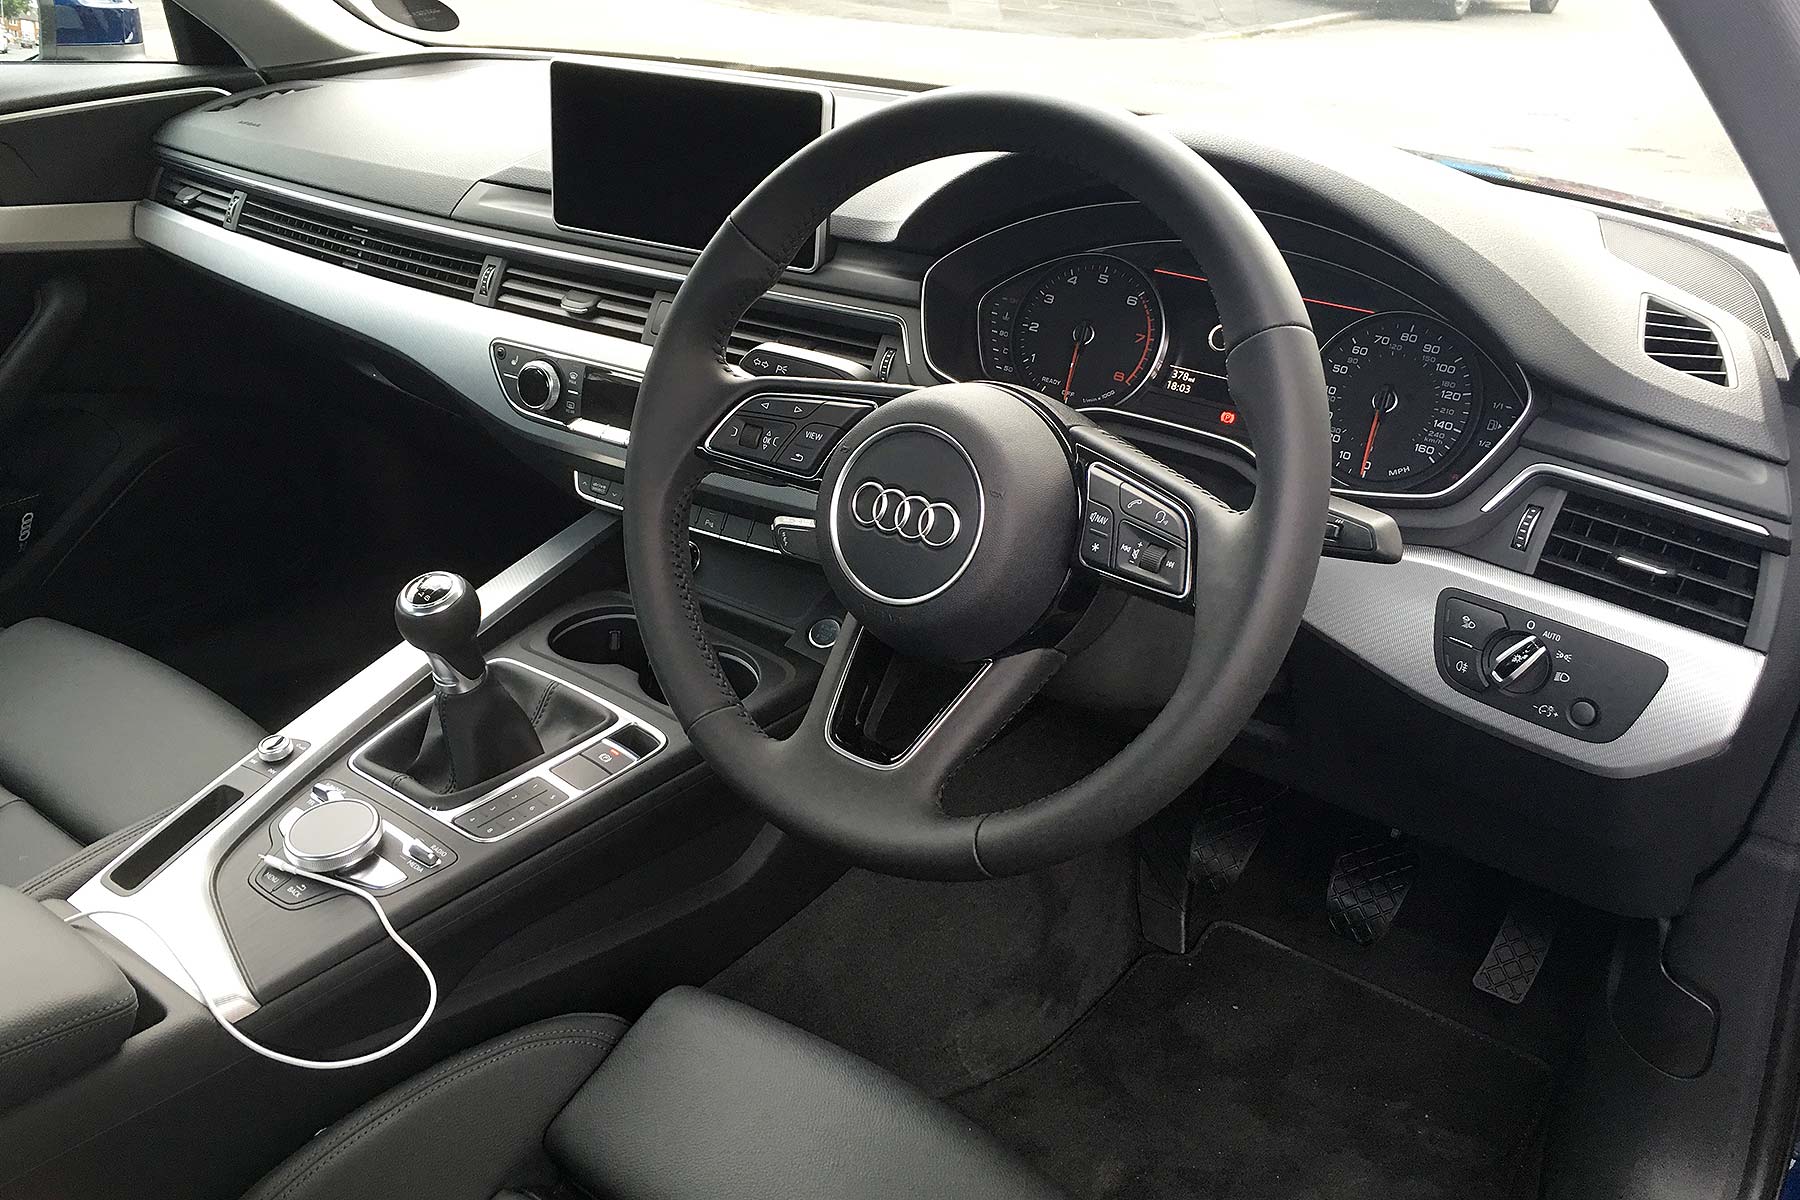 Audi A4 1.4 TFSI 150 long-term review